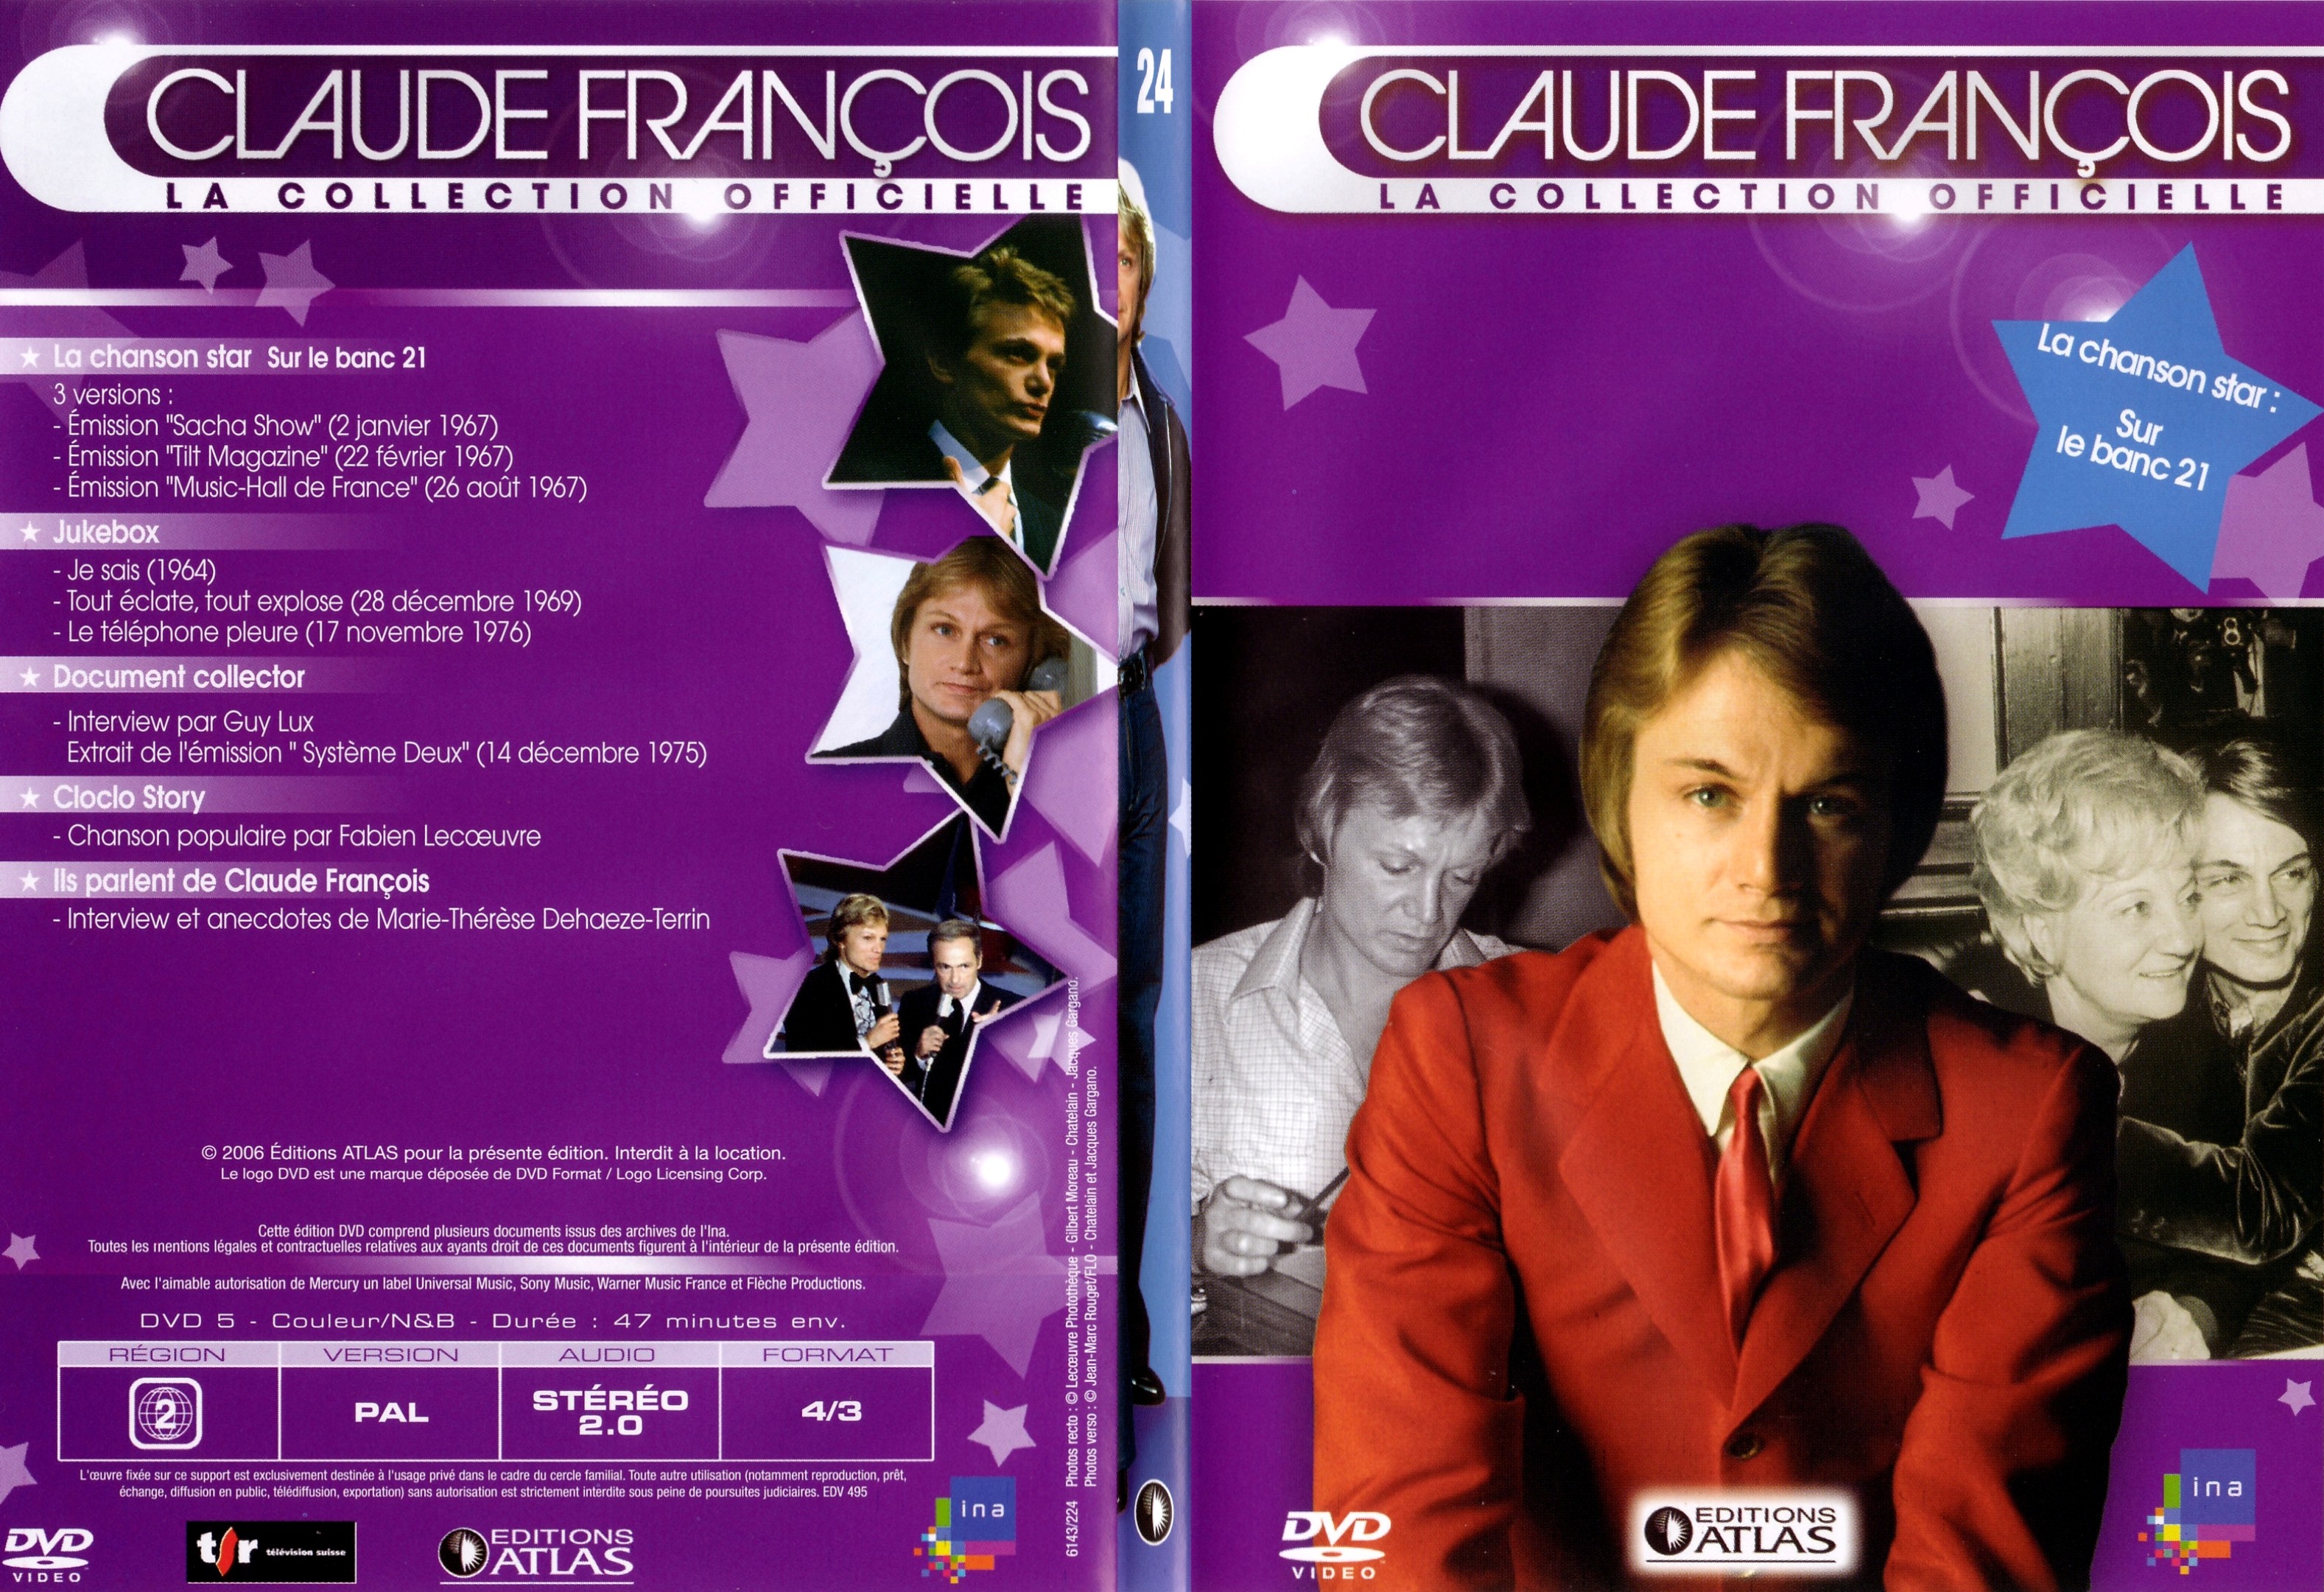 Jaquette DVD Claude francois le collection officielle vol 24 - SLIM